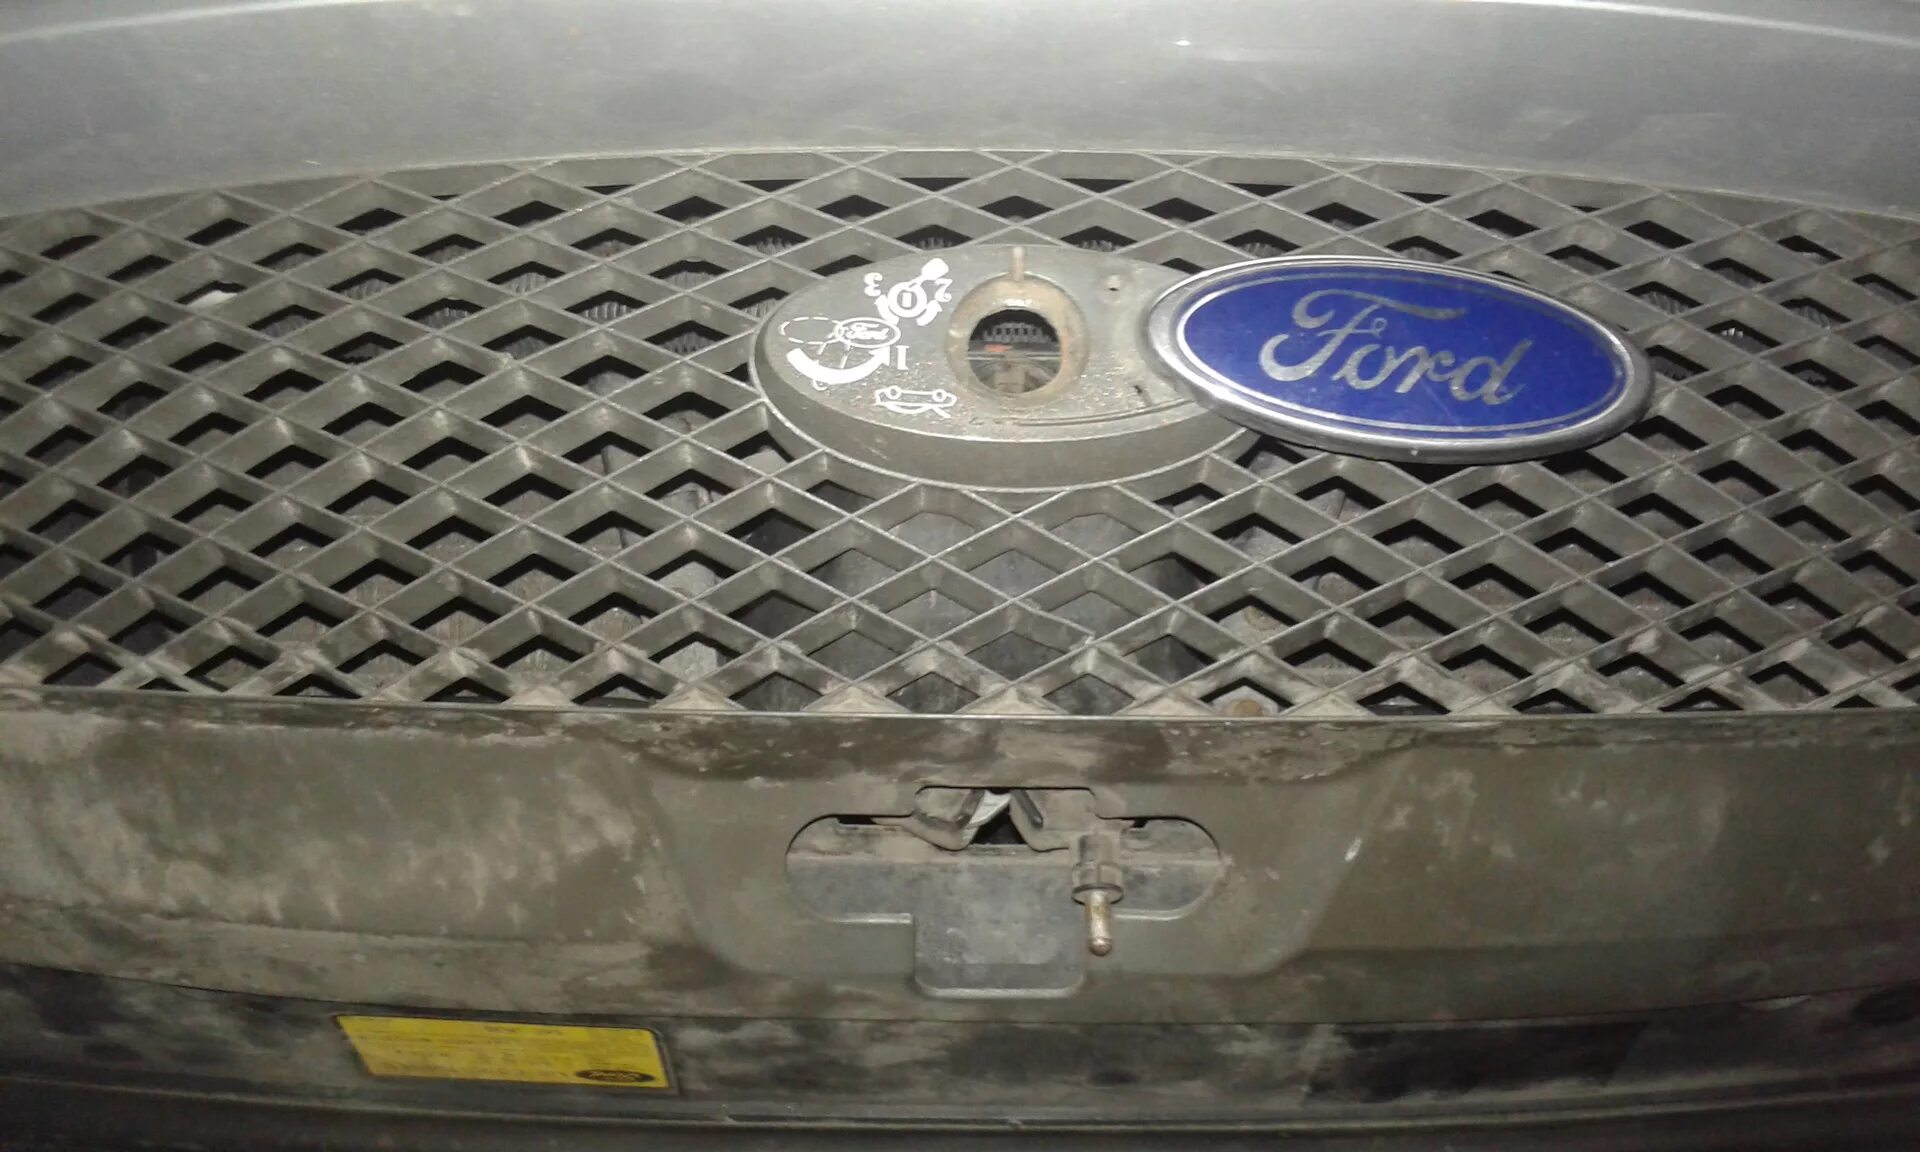 Капот Форд Мондео 2001 год. Подсветка капота Форд Мондео 3. Ford Mondeo III по капоте. Форд Мондео 1997 капот. Открыть капот мондео